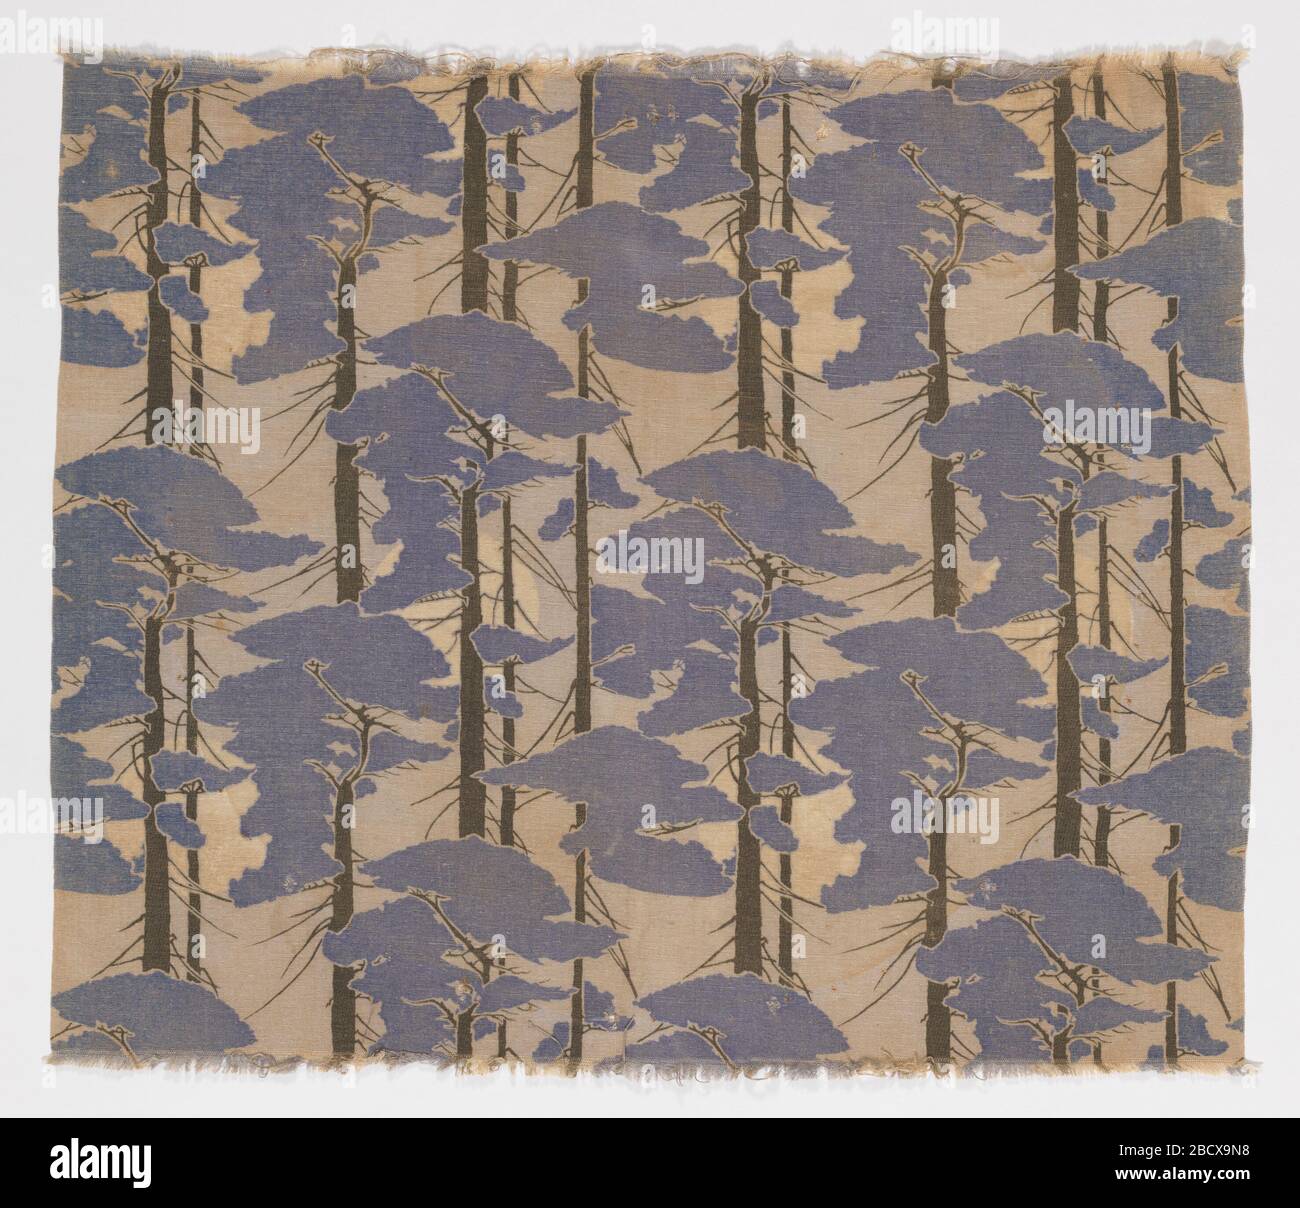 Tessile. Lunghezza del tessuto stampato in stile Arts & Crafts, con una luna piena vista attraverso alberi di pino, che riflette l'influenza del design giapponese. Tessile Foto Stock